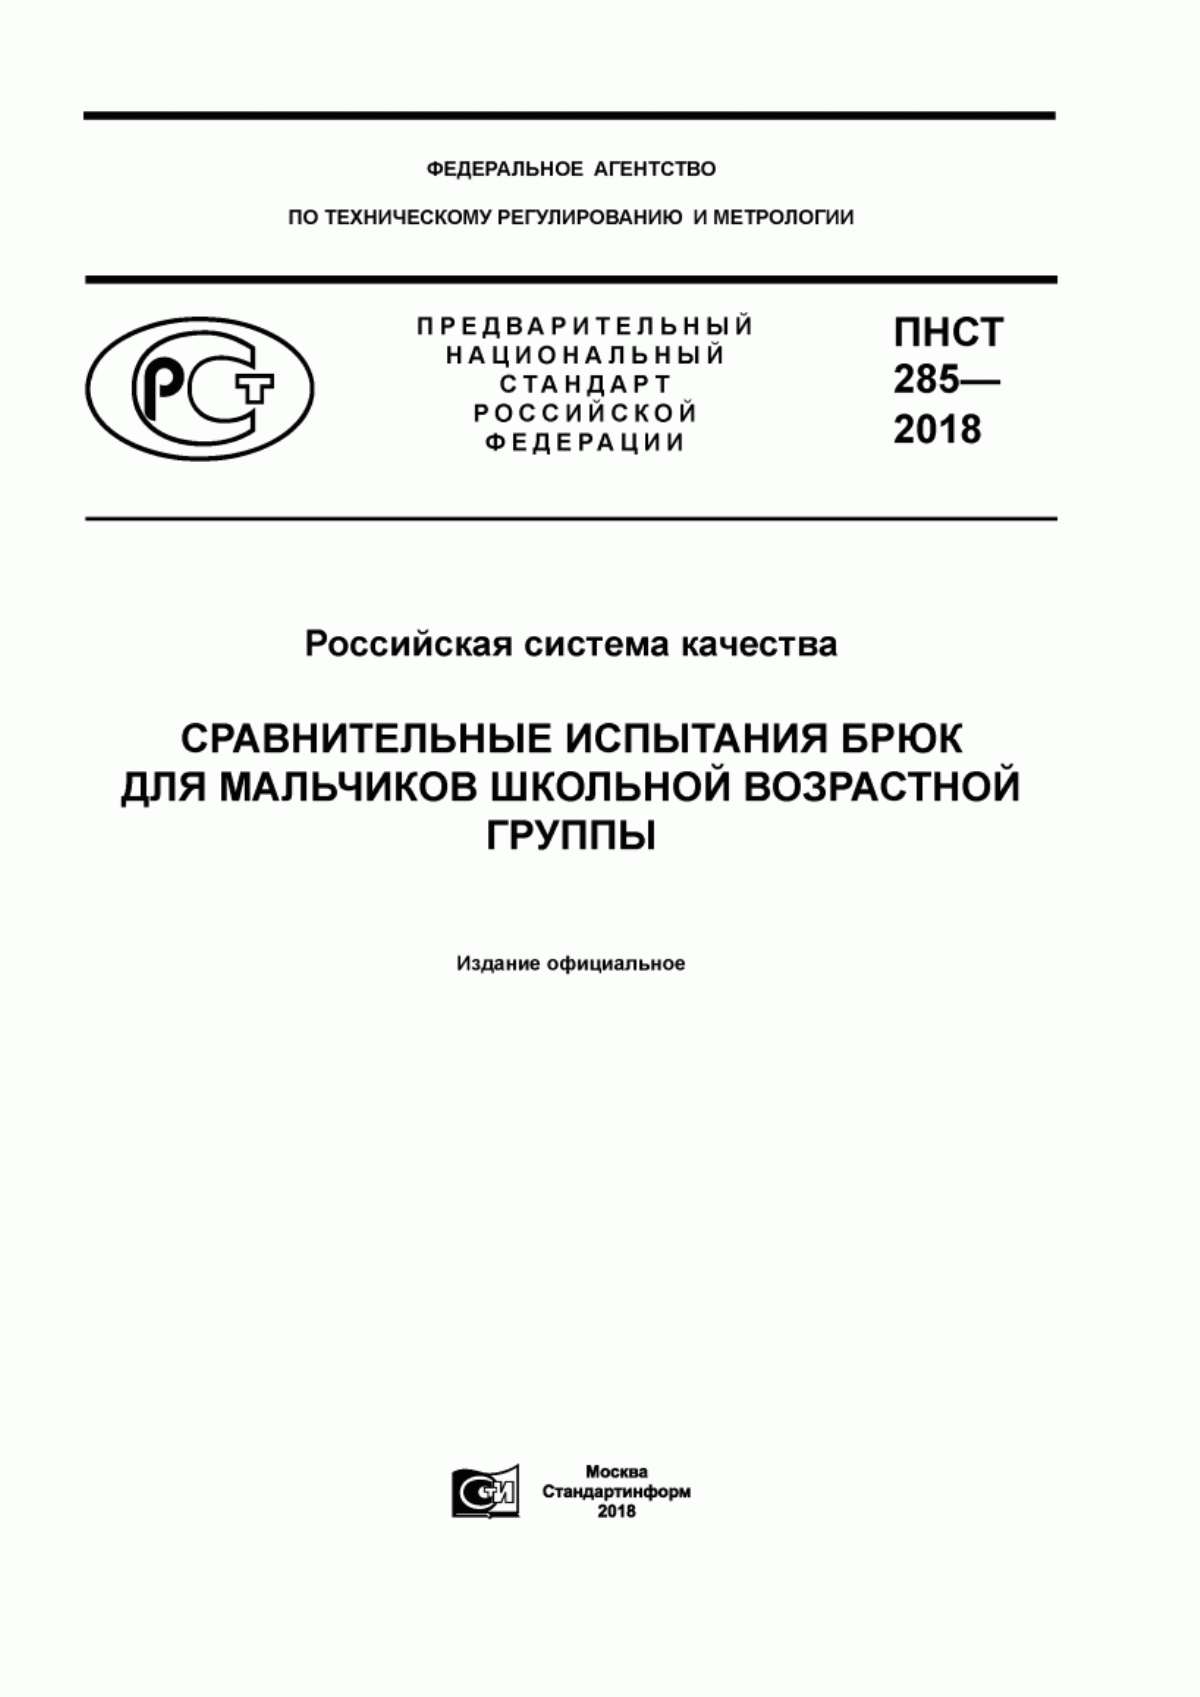 ПНСТ 285-2018 Российская система качества. Сравнительные испытания брюк для мальчиков школьной возрастной группы